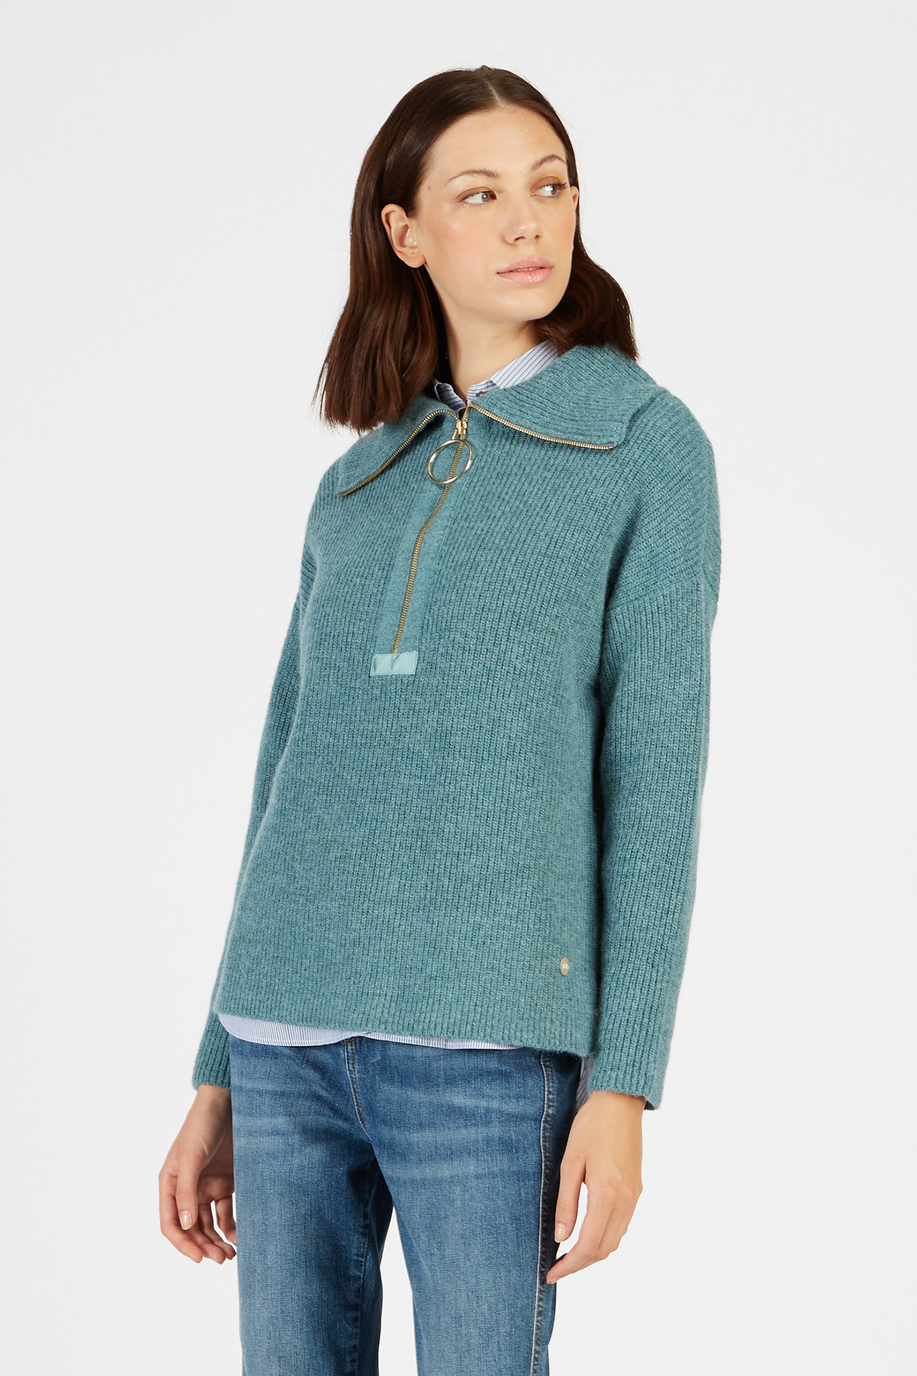 Maglia tricot donna collo alto in alpaca regular fit con zip - Look invernali per lei | La Martina - Official Online Shop